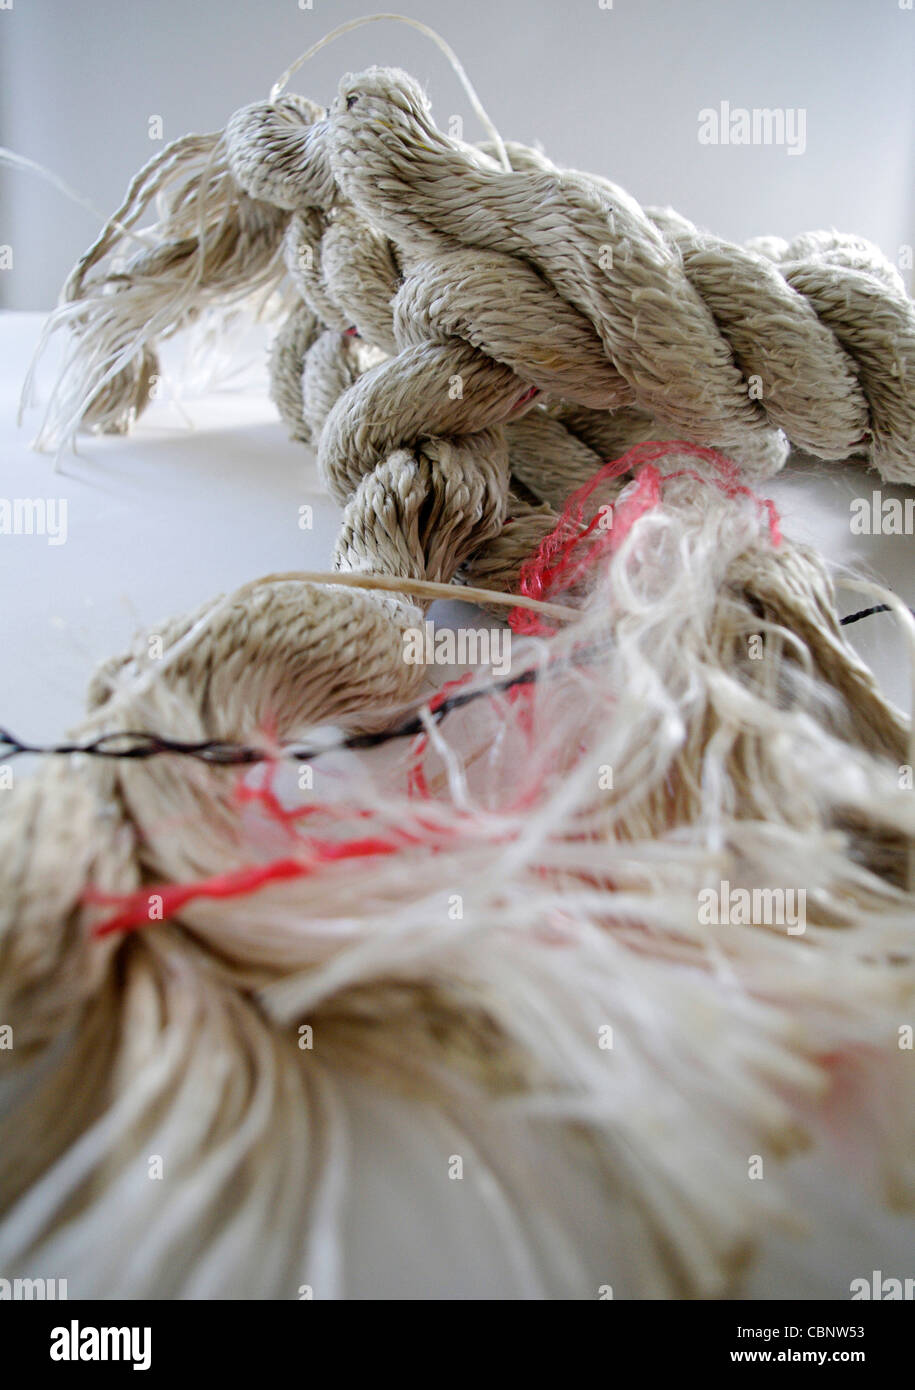 Ordentlich verdreht mehrlagige Seil auseinanderfallen in ein ungeordnetes Gewirr von losen Enden Stockfoto